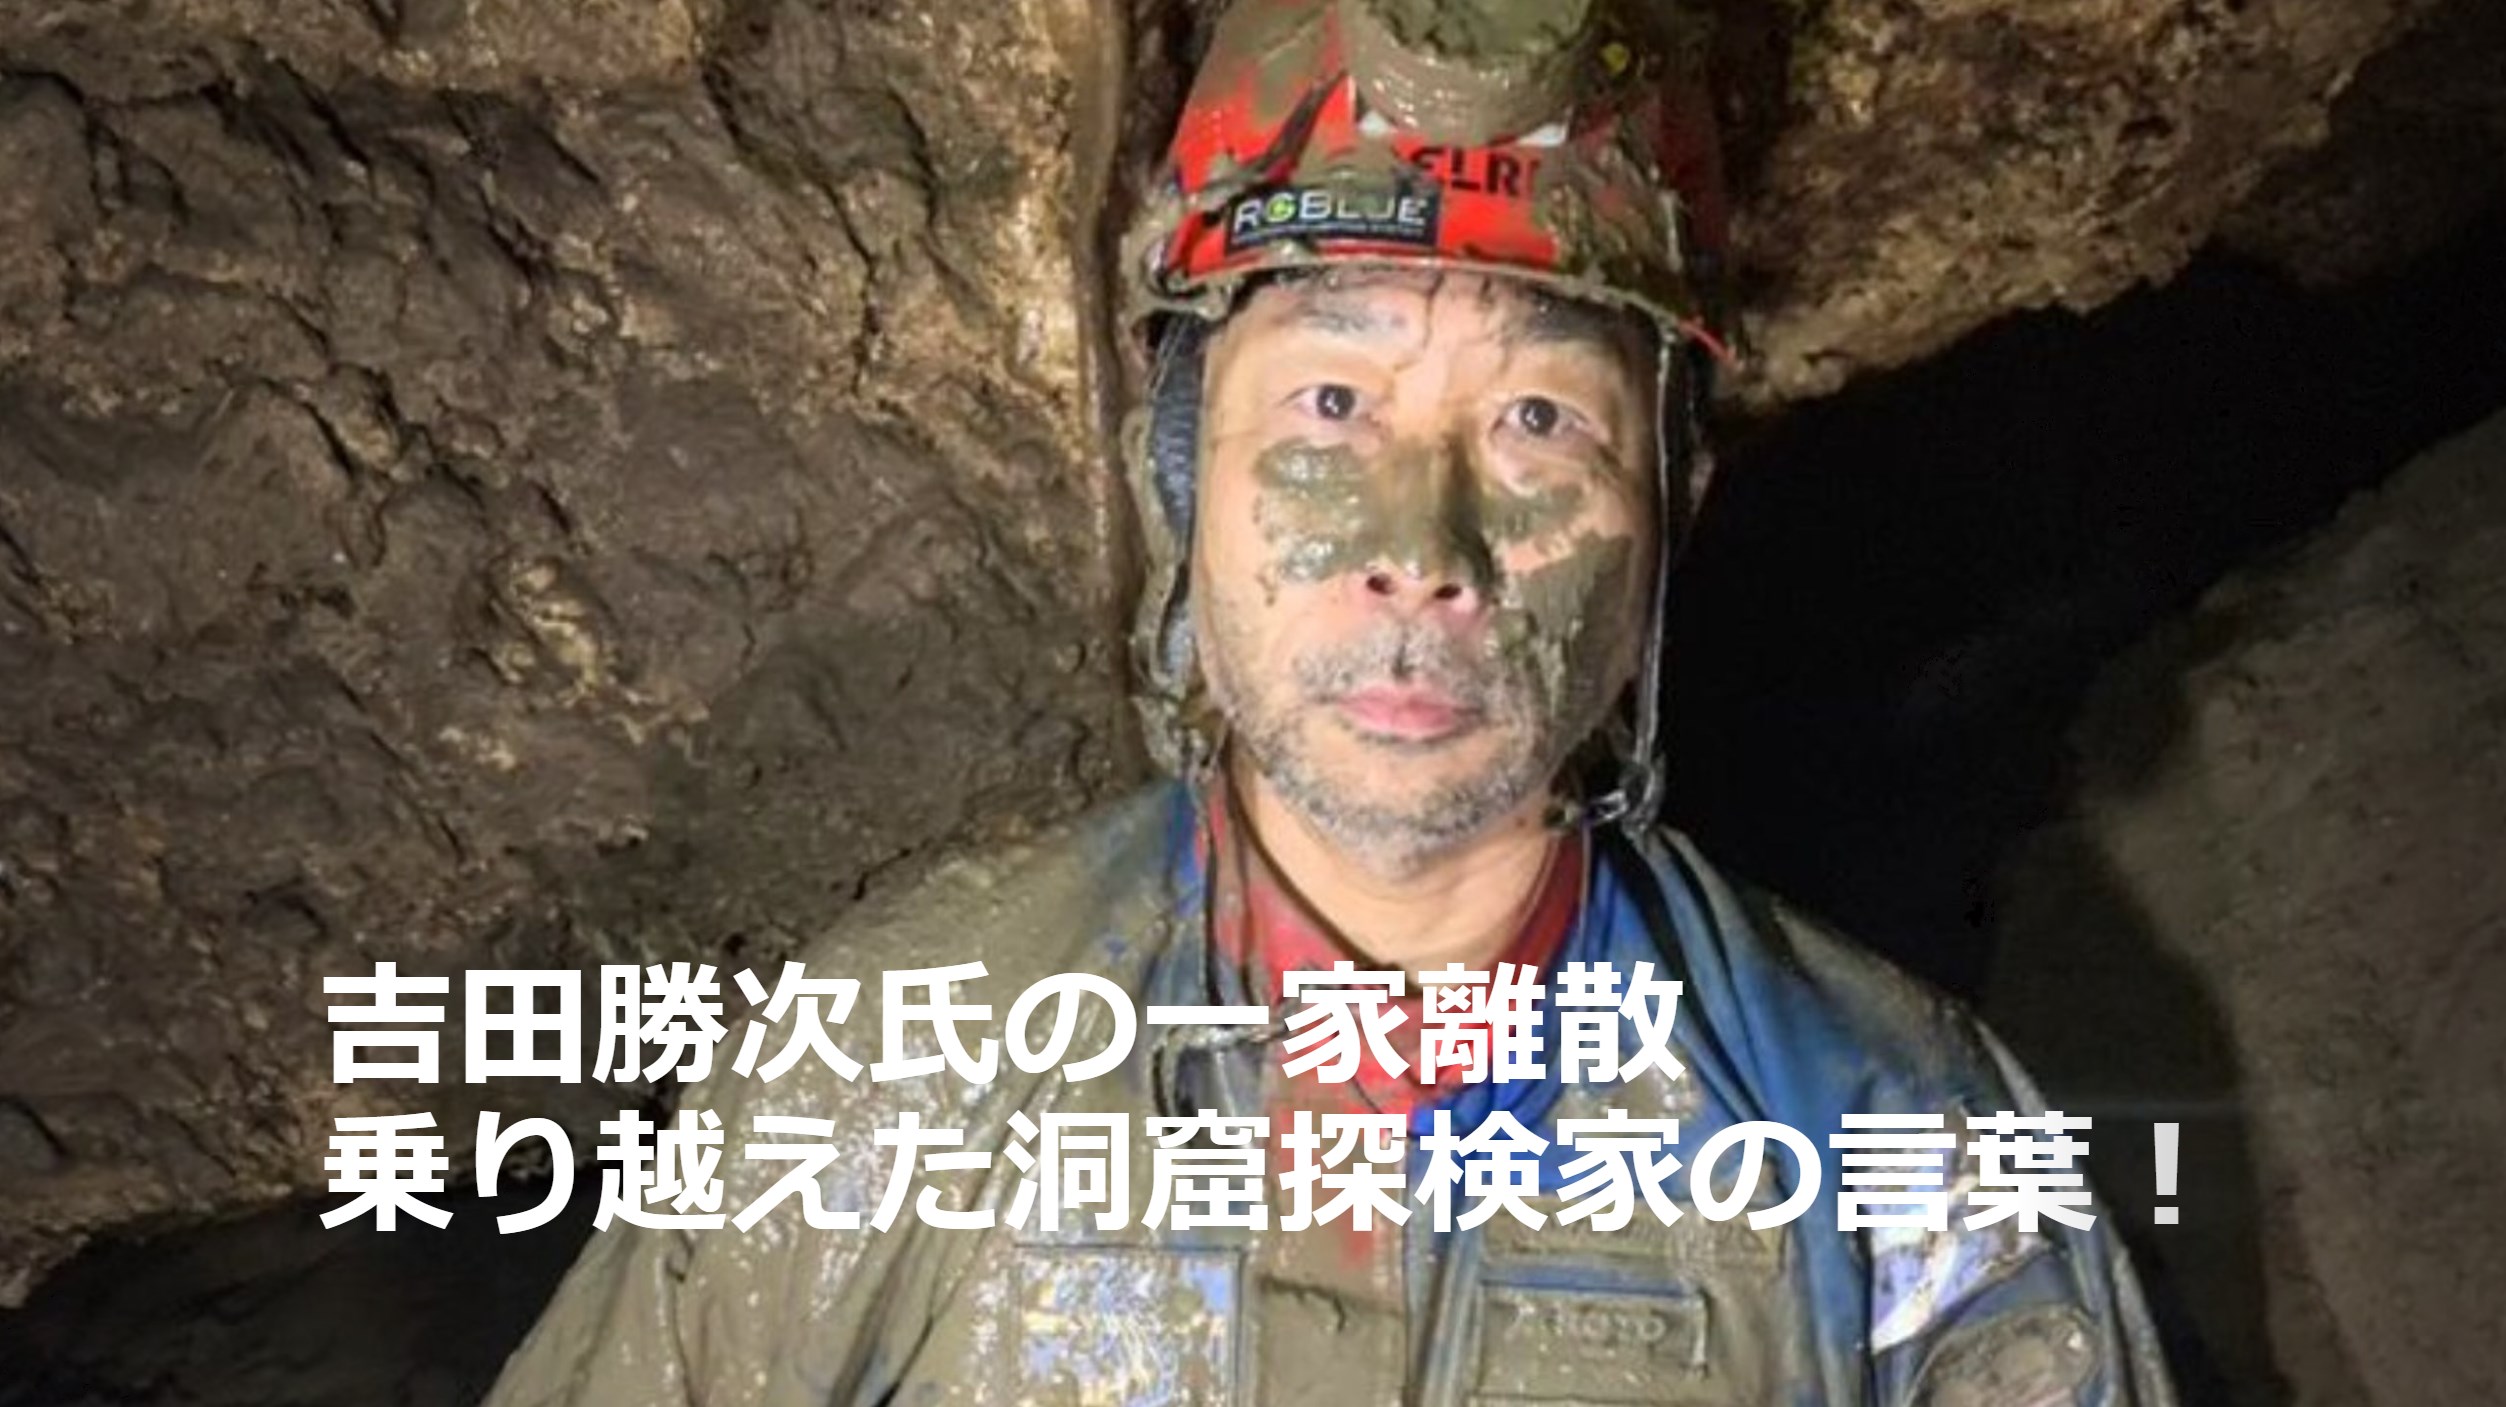 吉田勝次氏の一家離散を乗り越えた洞窟探検家の言葉！ 壮絶な人生を乗り越え、苦難を力に変えた人生哲学を探る！